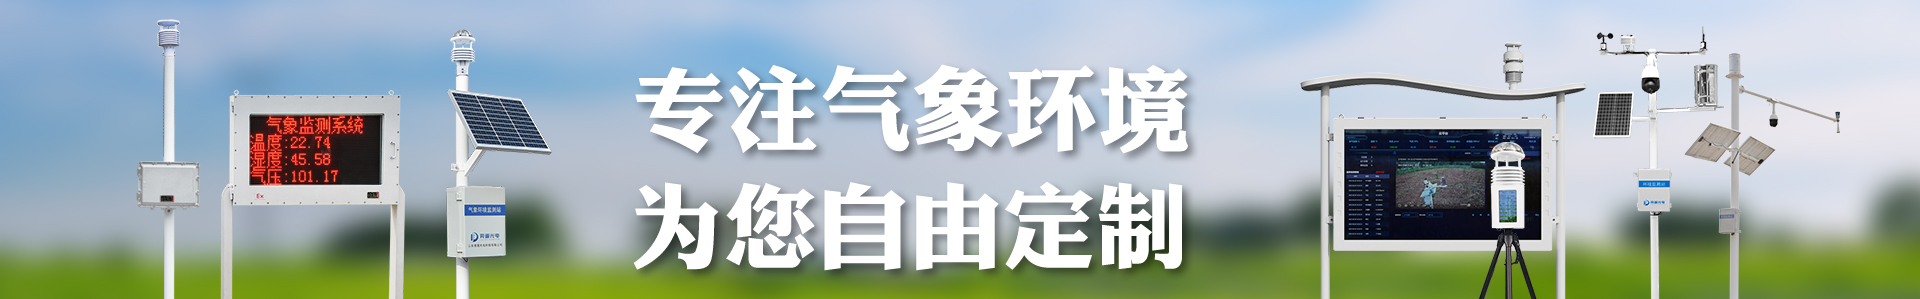 土壤墒情监测系统解决方案-自动气象站-小型气象站-防爆气象站-光伏气象站-开元旗牌·(中国)官方网站